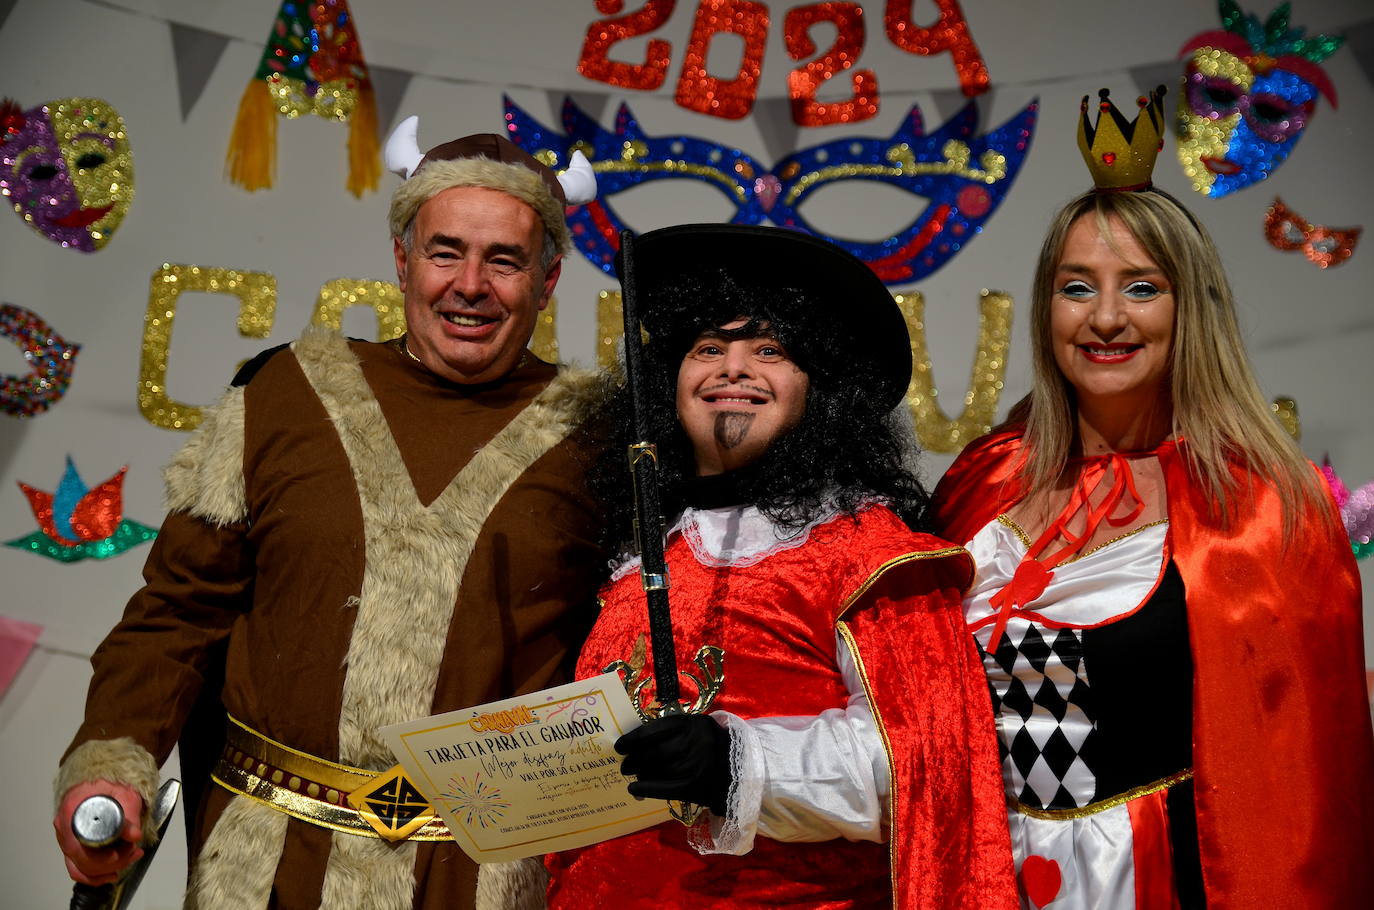 La magia del carnaval vuelve a Huétor Vega